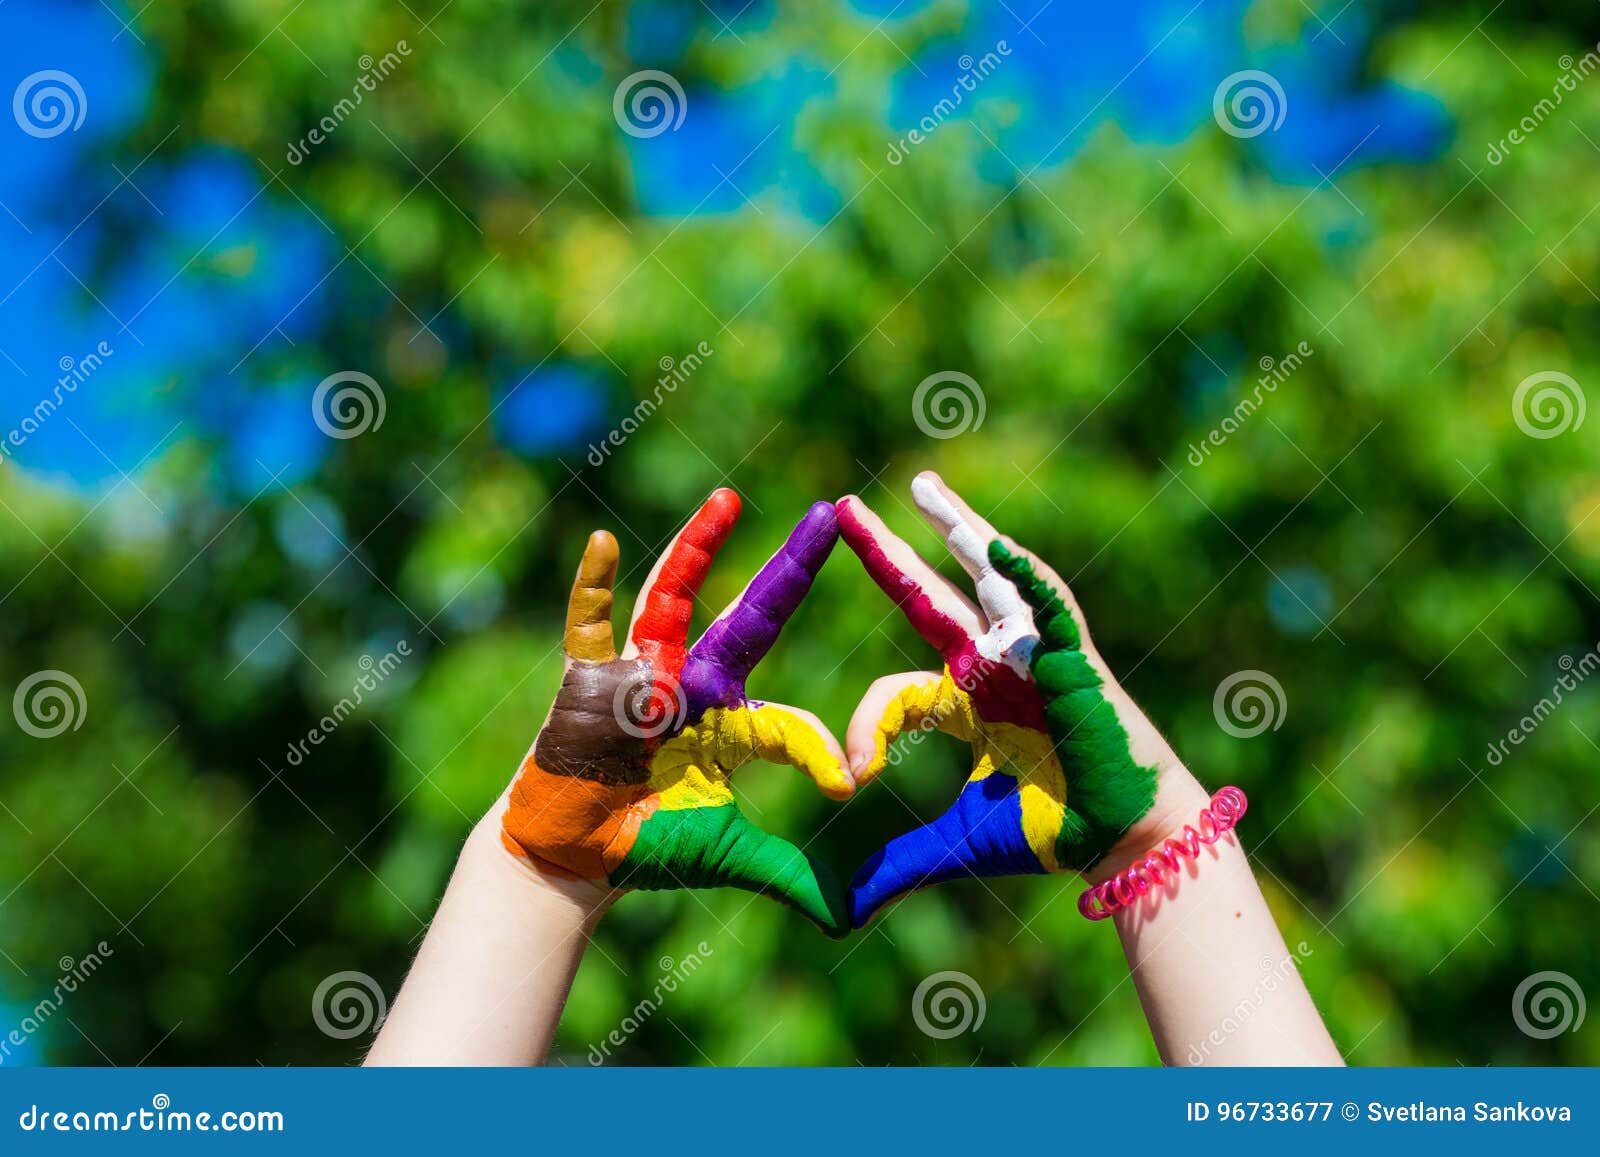 Les mains d'enfants peintes dans des couleurs lumineuses font une forme de coeur sur le fond de nature d'été. Les mains d'enfants peintes dans des couleurs lumineuses font une forme de coeur sur le fond de nature Concept d'art et de peinture